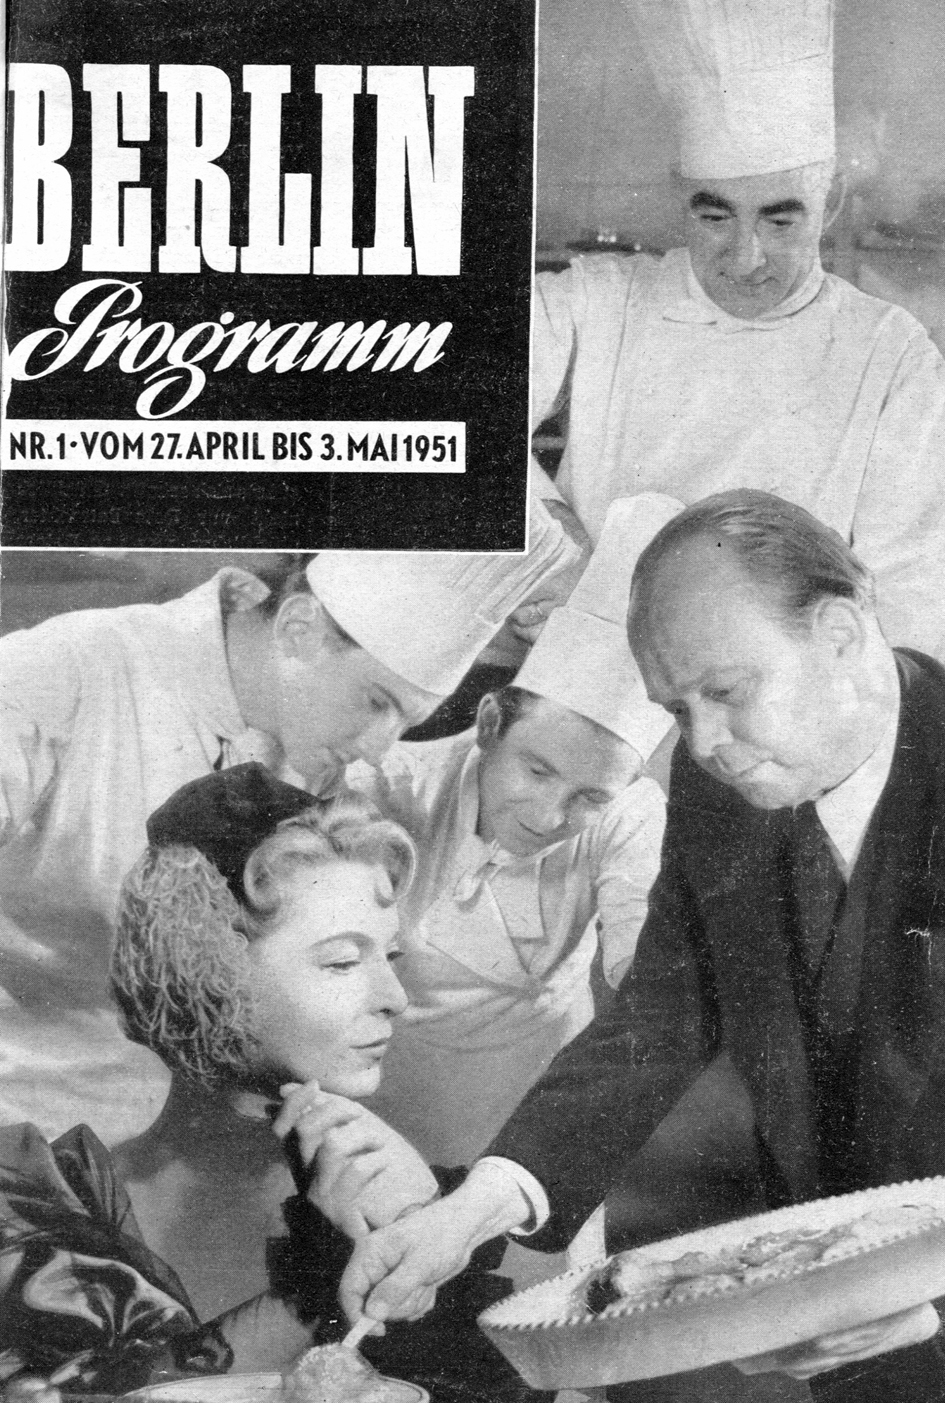 Berlin Programm, erste Ausgabe, 1951